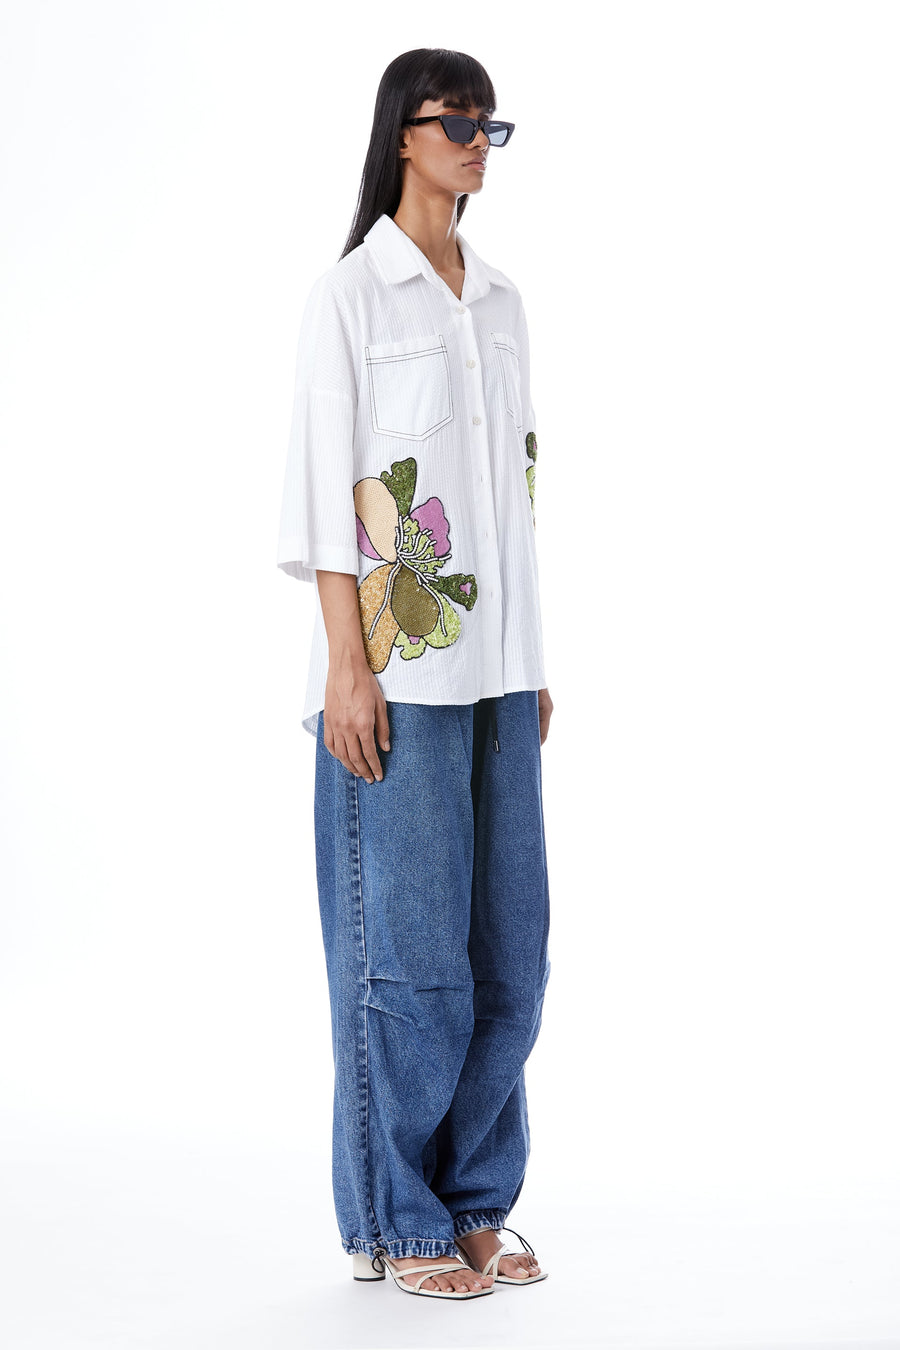 'Twin Peonies' Hand-Embellished Shirt - Kanika Goyal Label